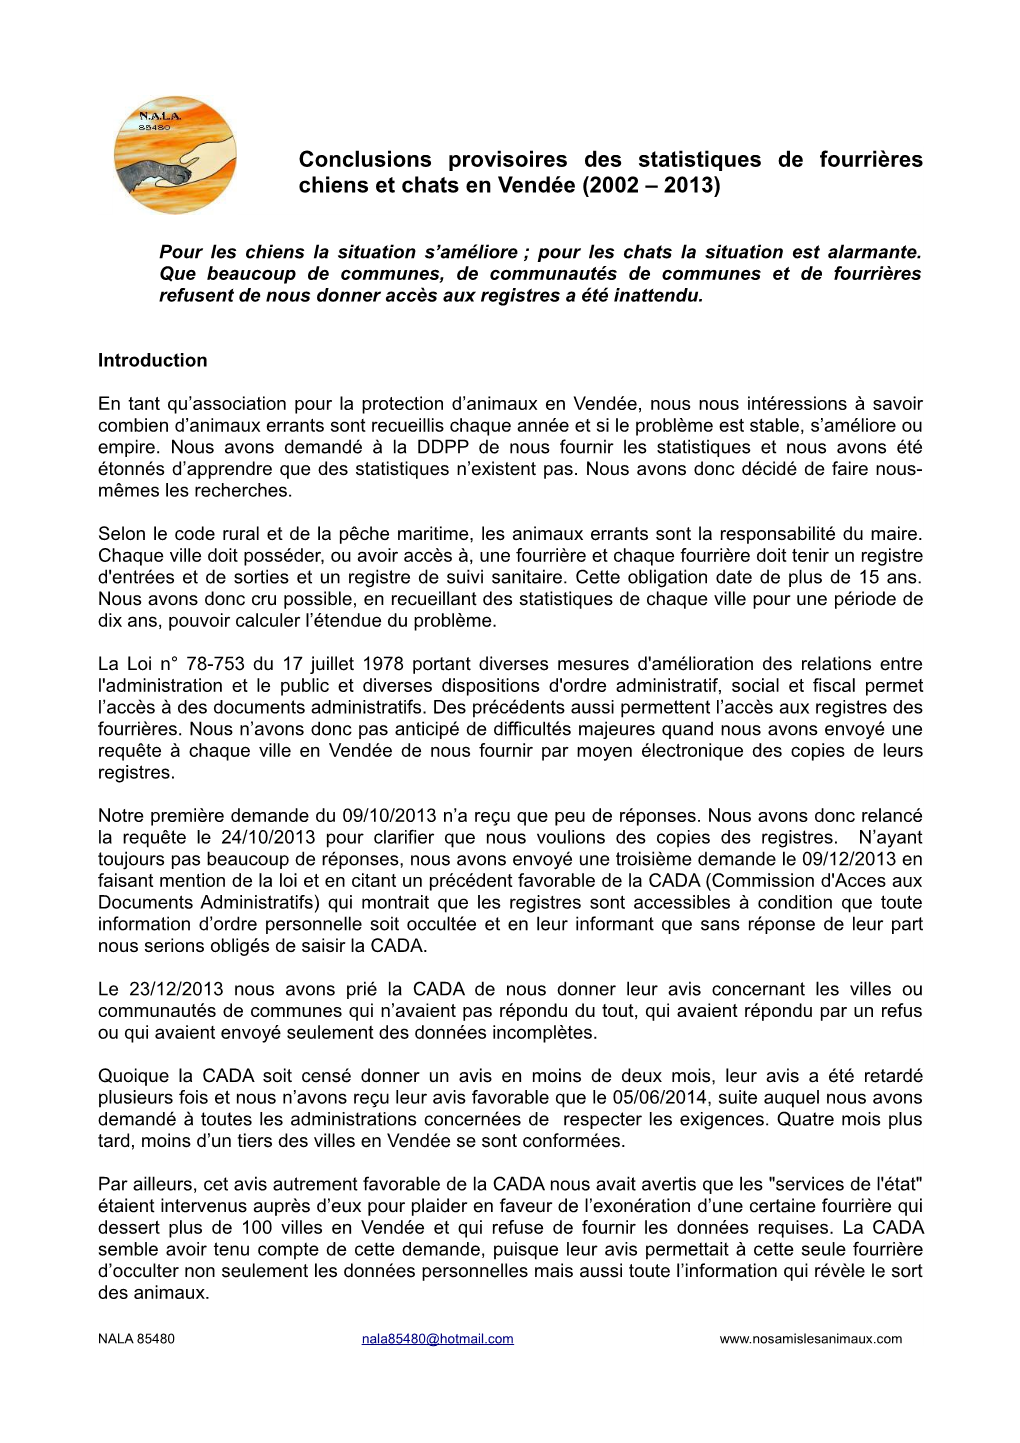 Conclusions Provisoires Des Statistiques De Fourrières Chiens Et Chats En Vendée (2002 – 2013)